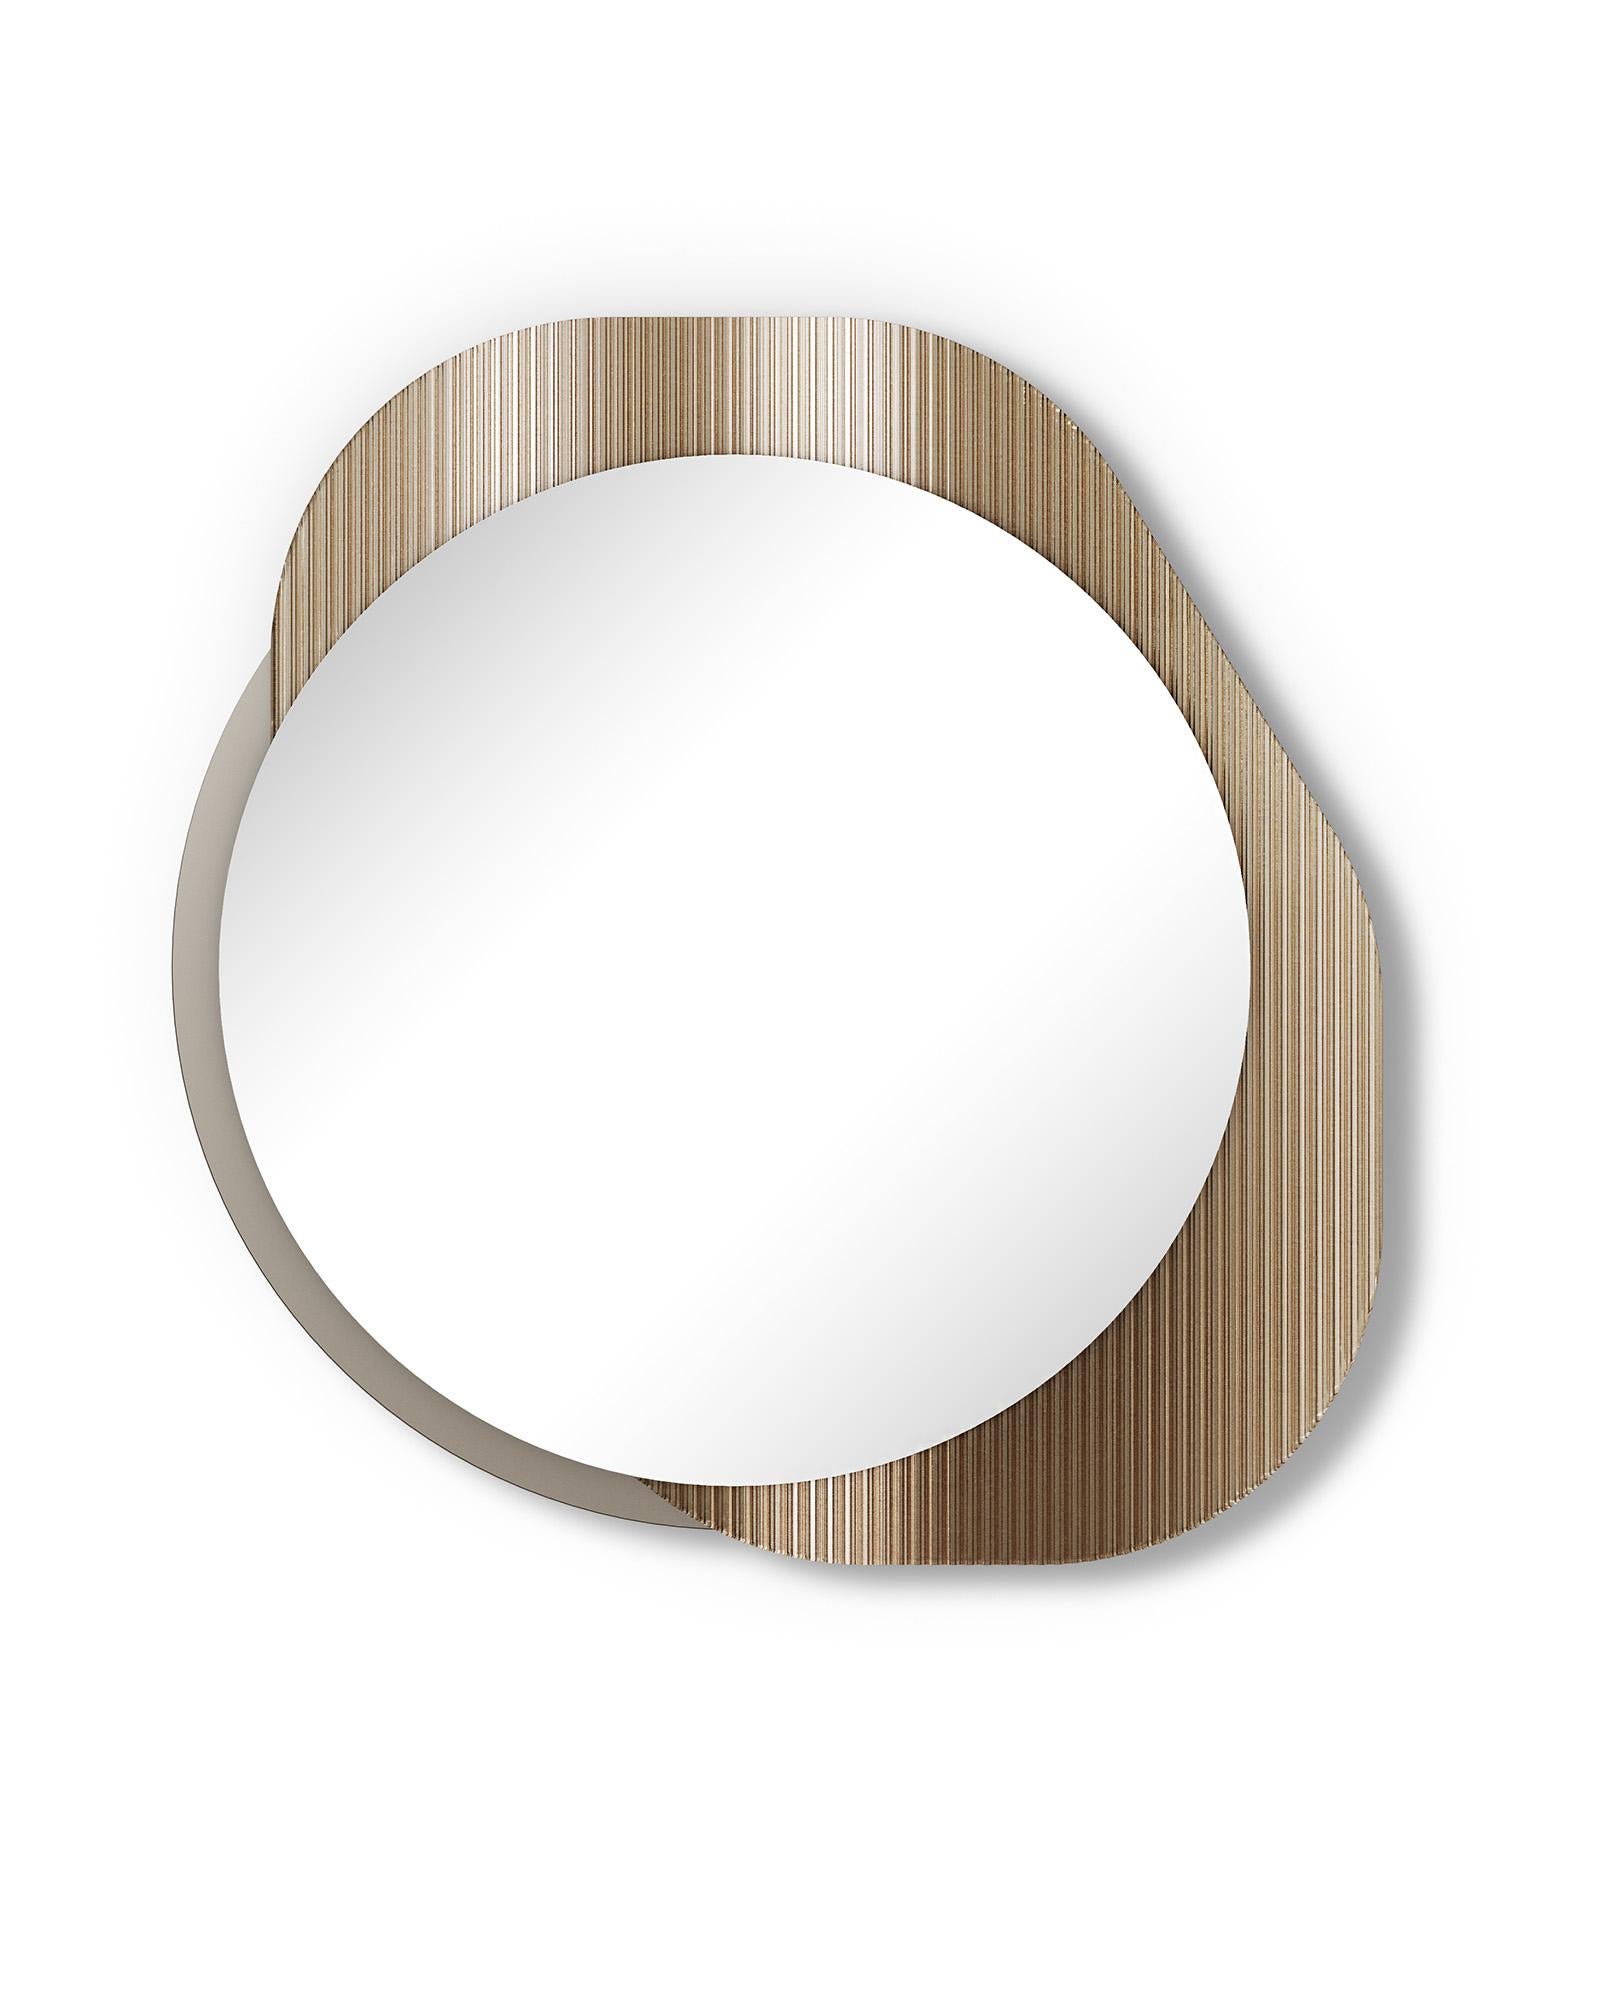 Freistehend oder hängend
Spiegel mit Rahmen zusammengesetzt
aus zwei Glaselementen:
ein Teil in 6 mm Dicke
hochtemperaturgeschmolzen
Glas in transparent
oder bronzenem Finish; ein Teil
in 6 mm dickem Flachglas
in rauchfarbener oder bronzefarbener